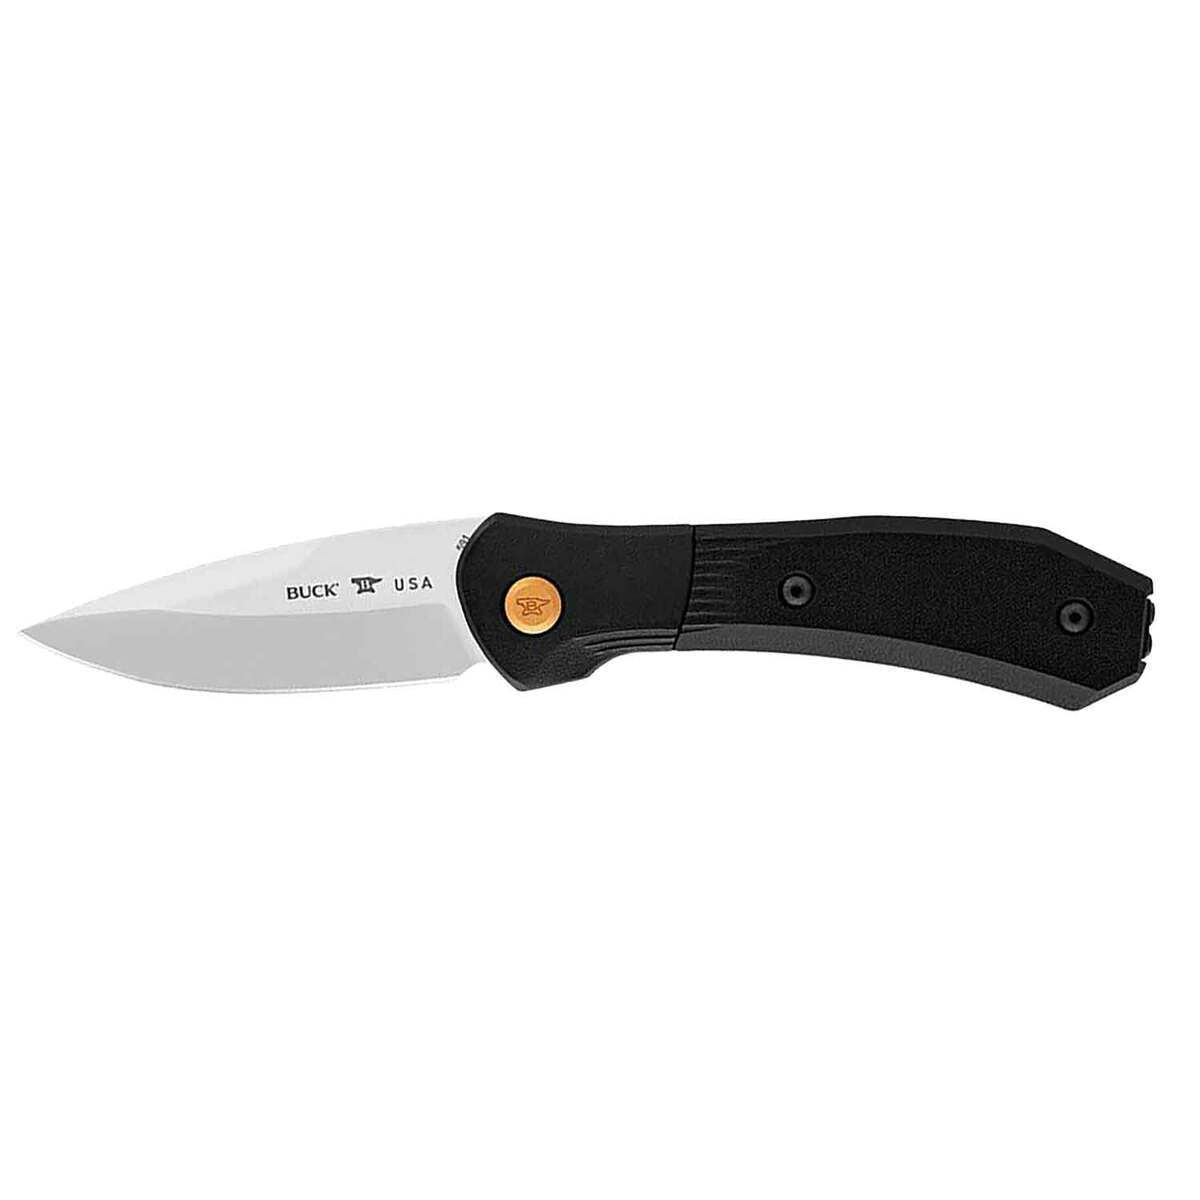 https://www.knives.com/medias/buck-knives-paradigm-shift-3-inch-automatic-knife-1707522-1.jpg?context=bWFzdGVyfGltYWdlc3wyNzMyMXxpbWFnZS9qcGVnfGg4Zi9oMTEvMTA4MTExMDUwODM0MjIvMTcwNzUyMi0xX2Jhc2UtY29udmVyc2lvbkZvcm1hdF8xMjAwLWNvbnZlcnNpb25Gb3JtYXR8MzI5Mjg3YjNmNzVmMmJkZGY4OWY2NWIwM2MxZDdkYTJjYjkyYmExYTQxM2M0MTAwY2EzMzEwYzAyYzdhNjJjZA